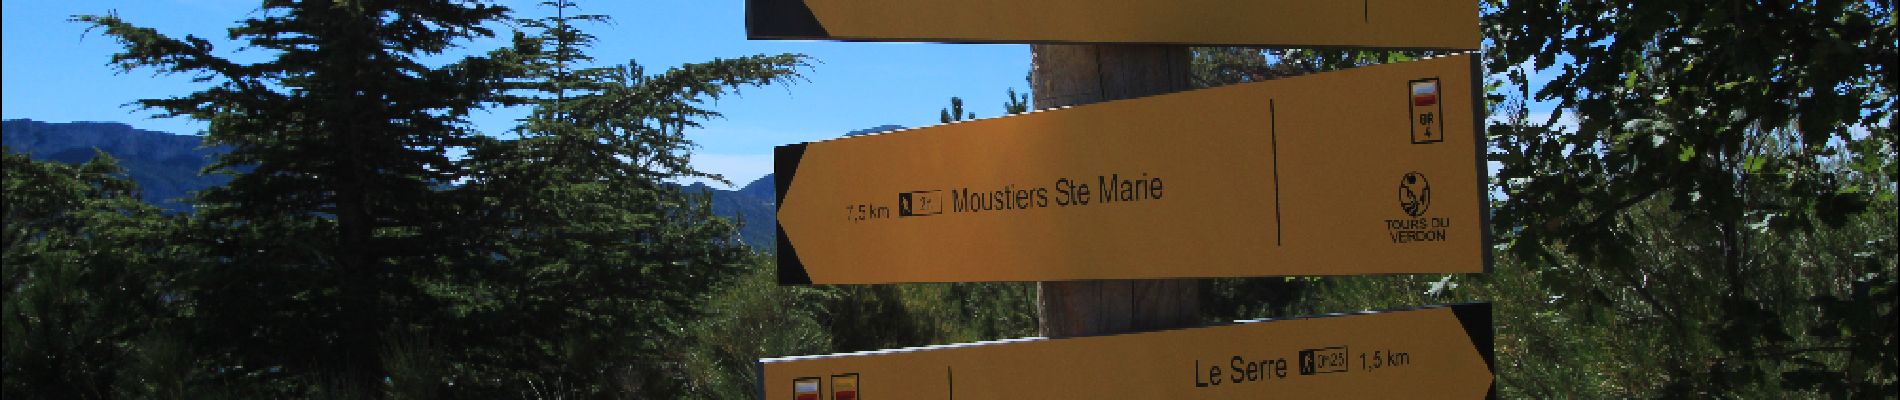 Point d'intérêt Moustiers-Sainte-Marie - moustiers - Photo